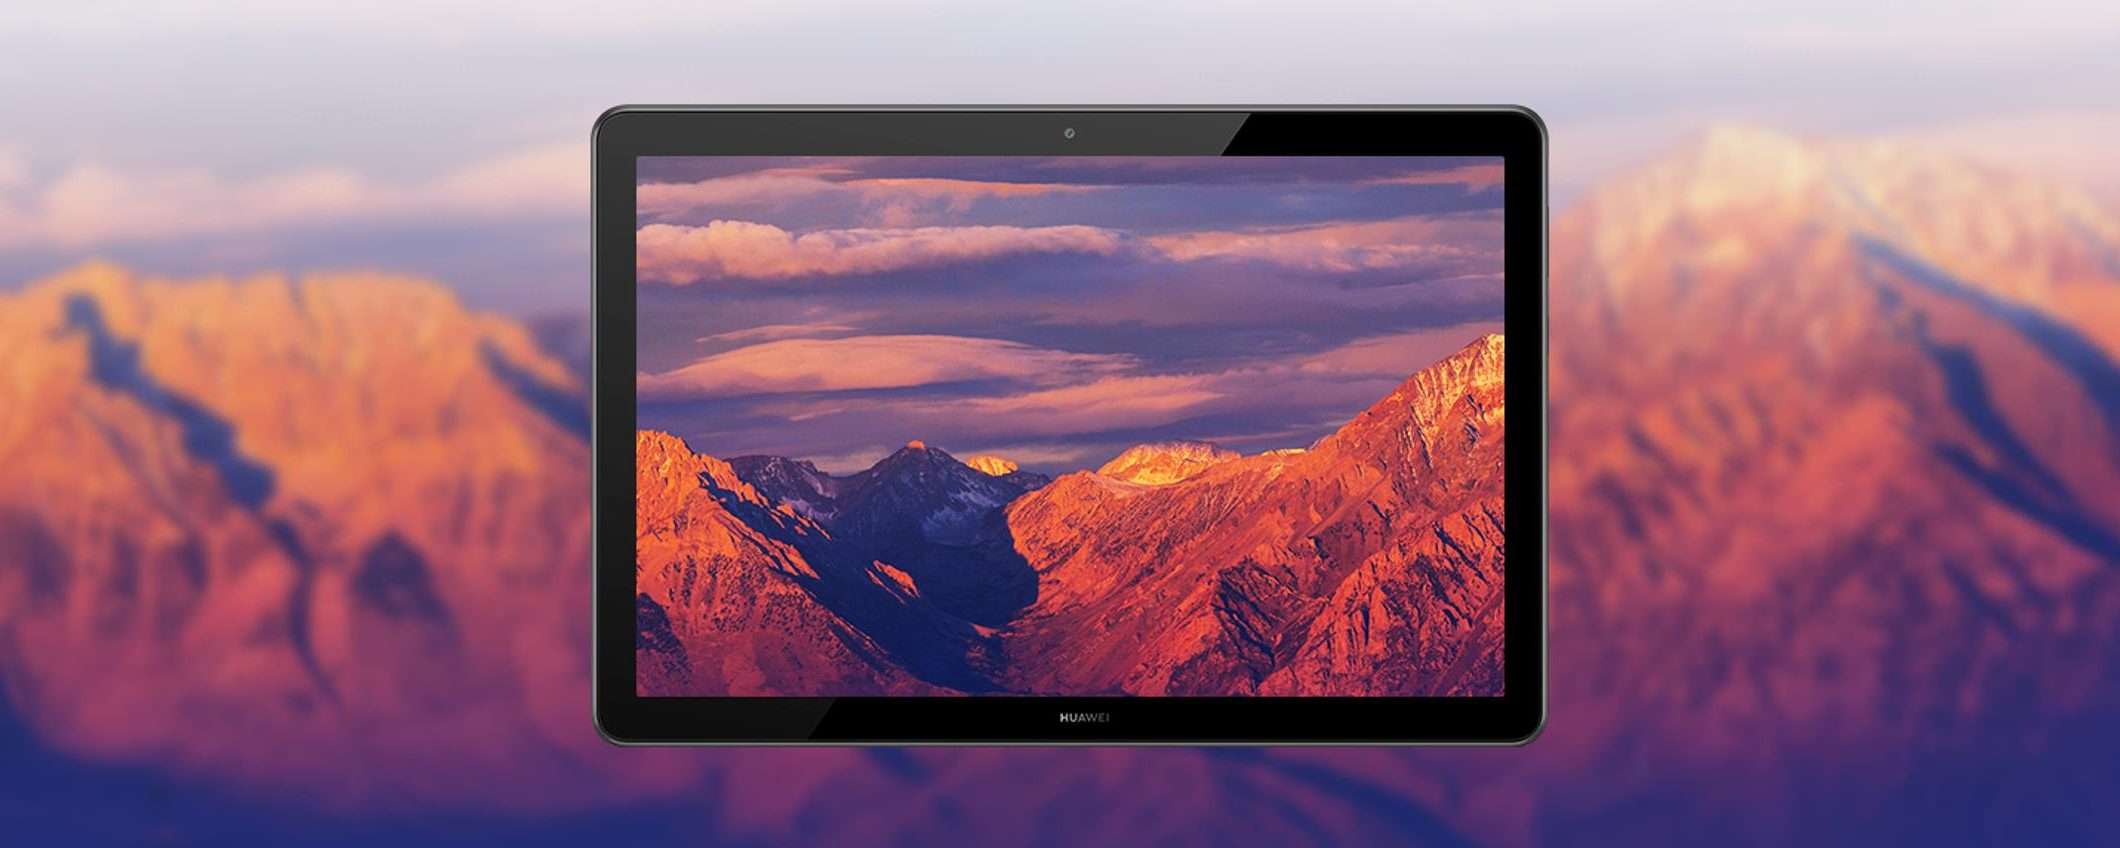 Huawei Mediapad T5 è un tablet da non perdere ad appena 159€